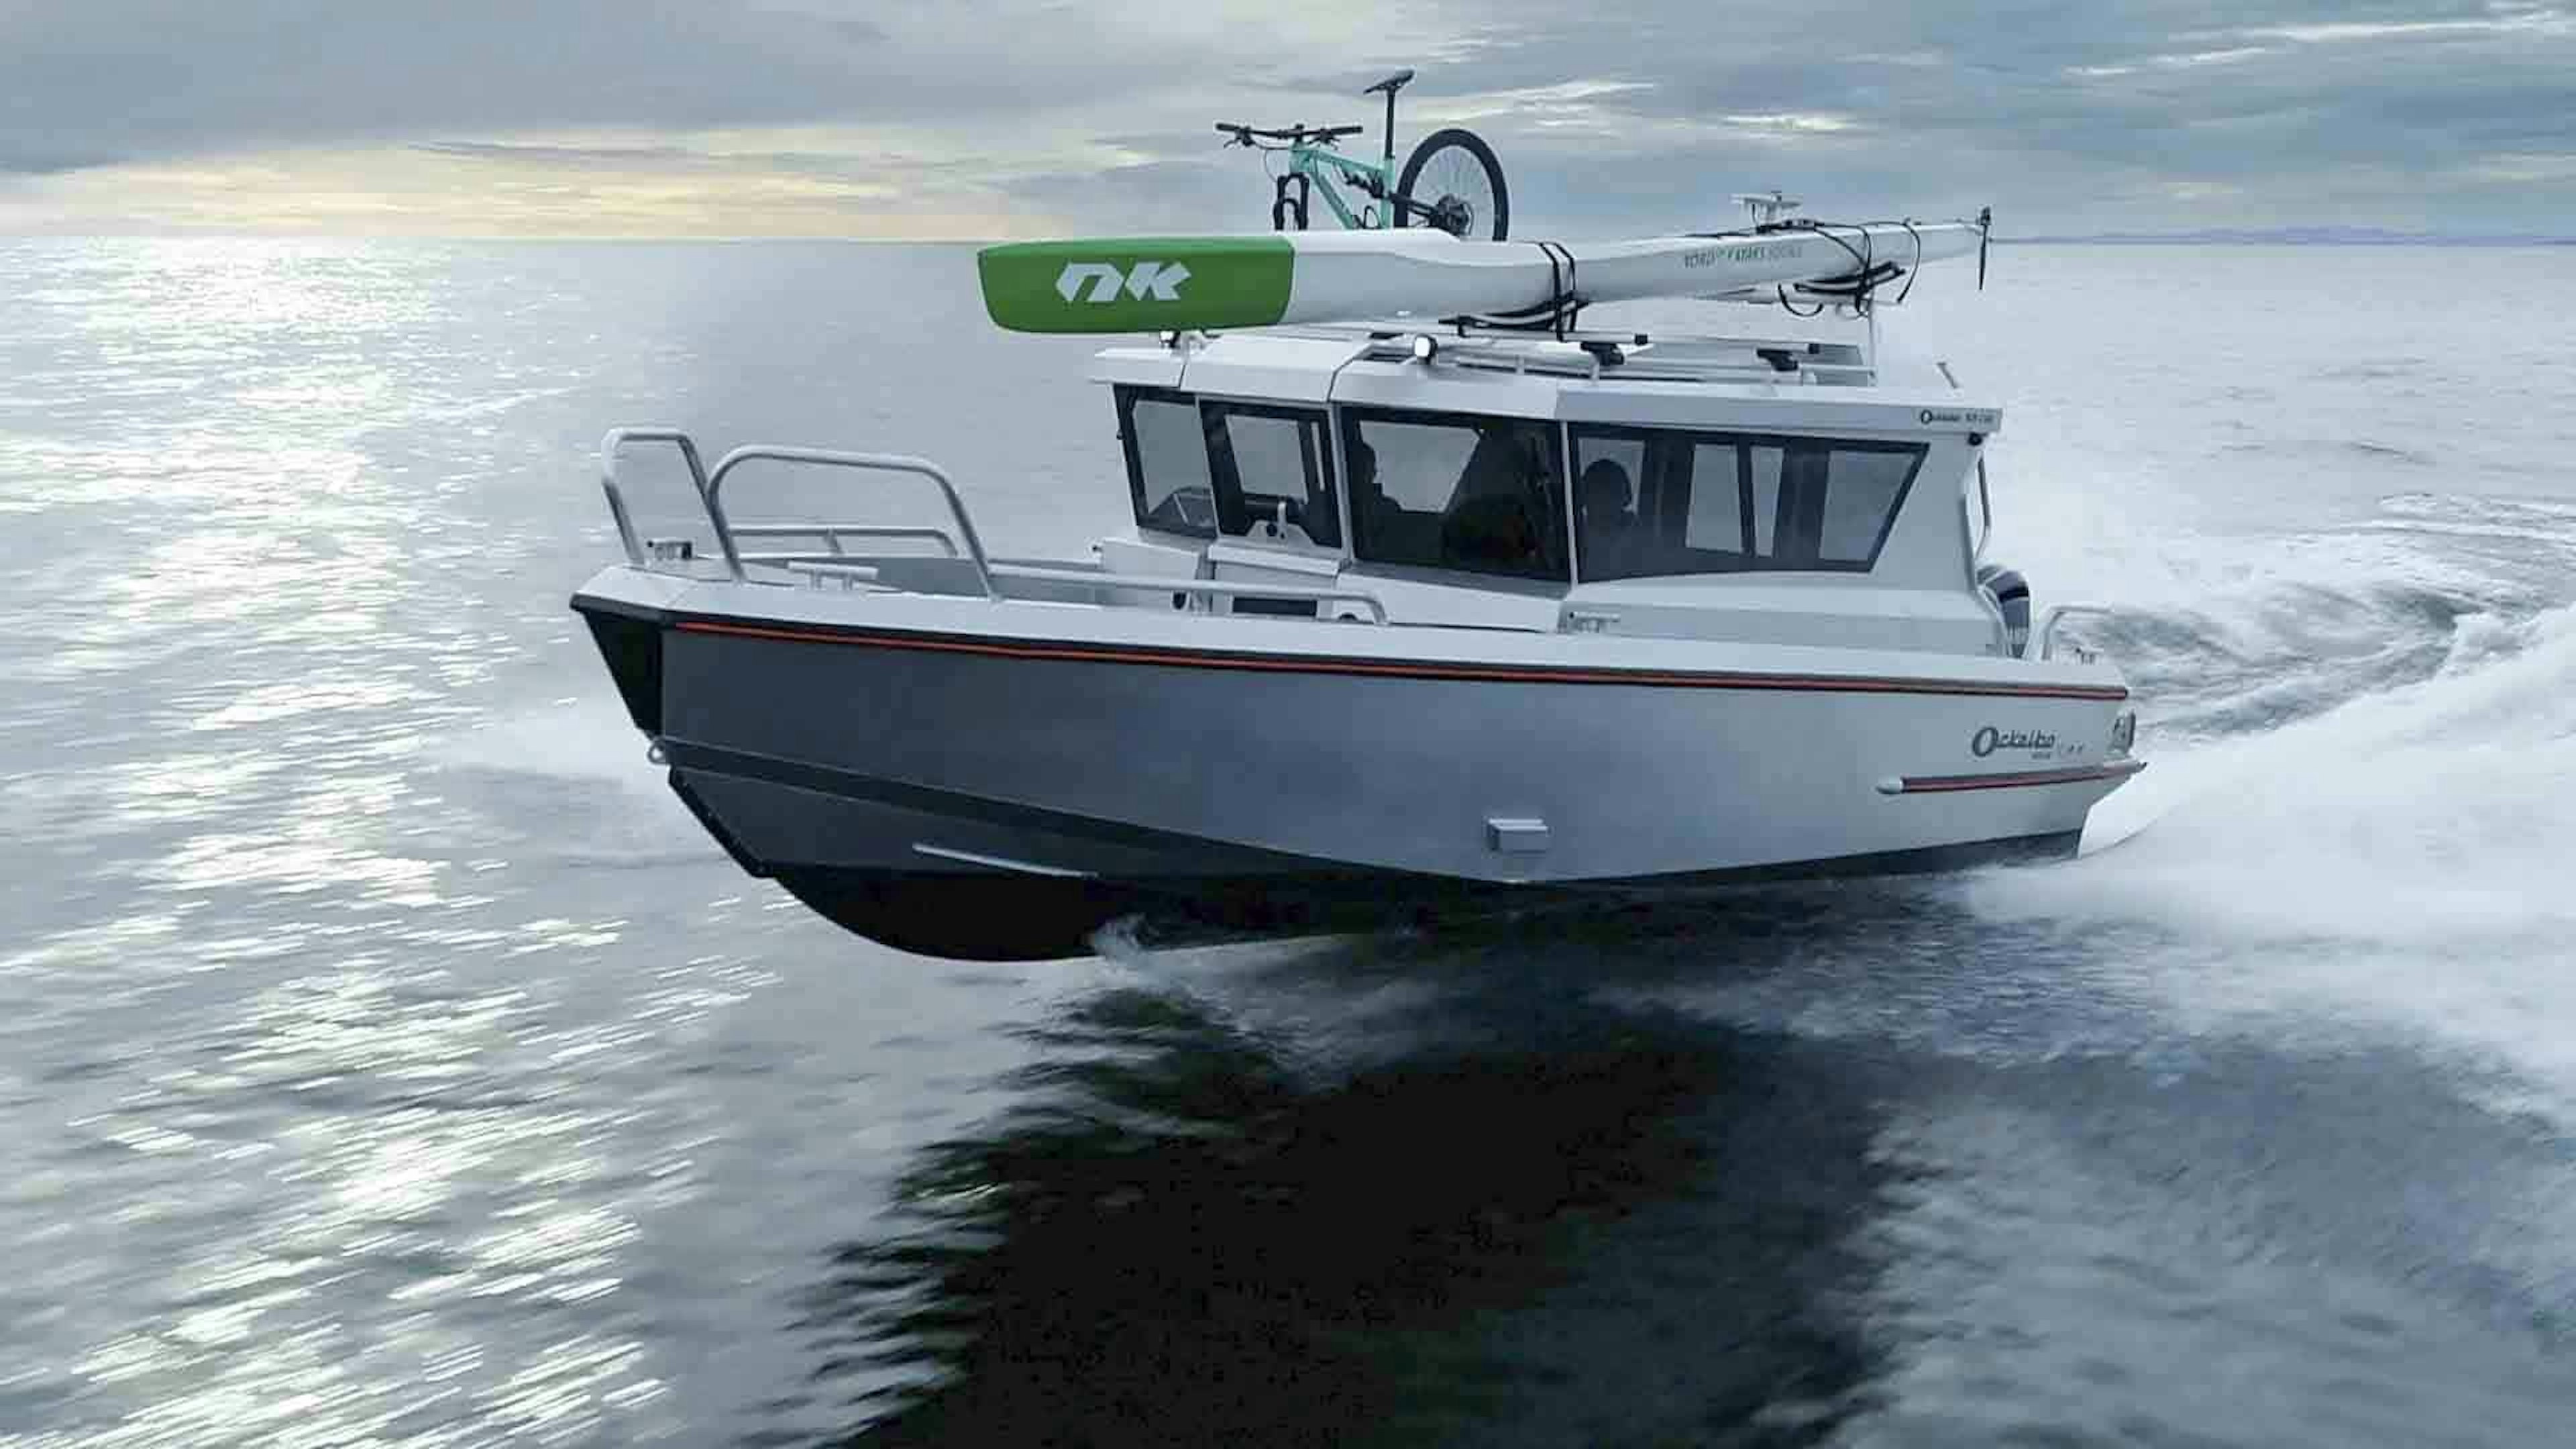 Test av hyttbåten Ockelbo B25 Cab på öppet hav.